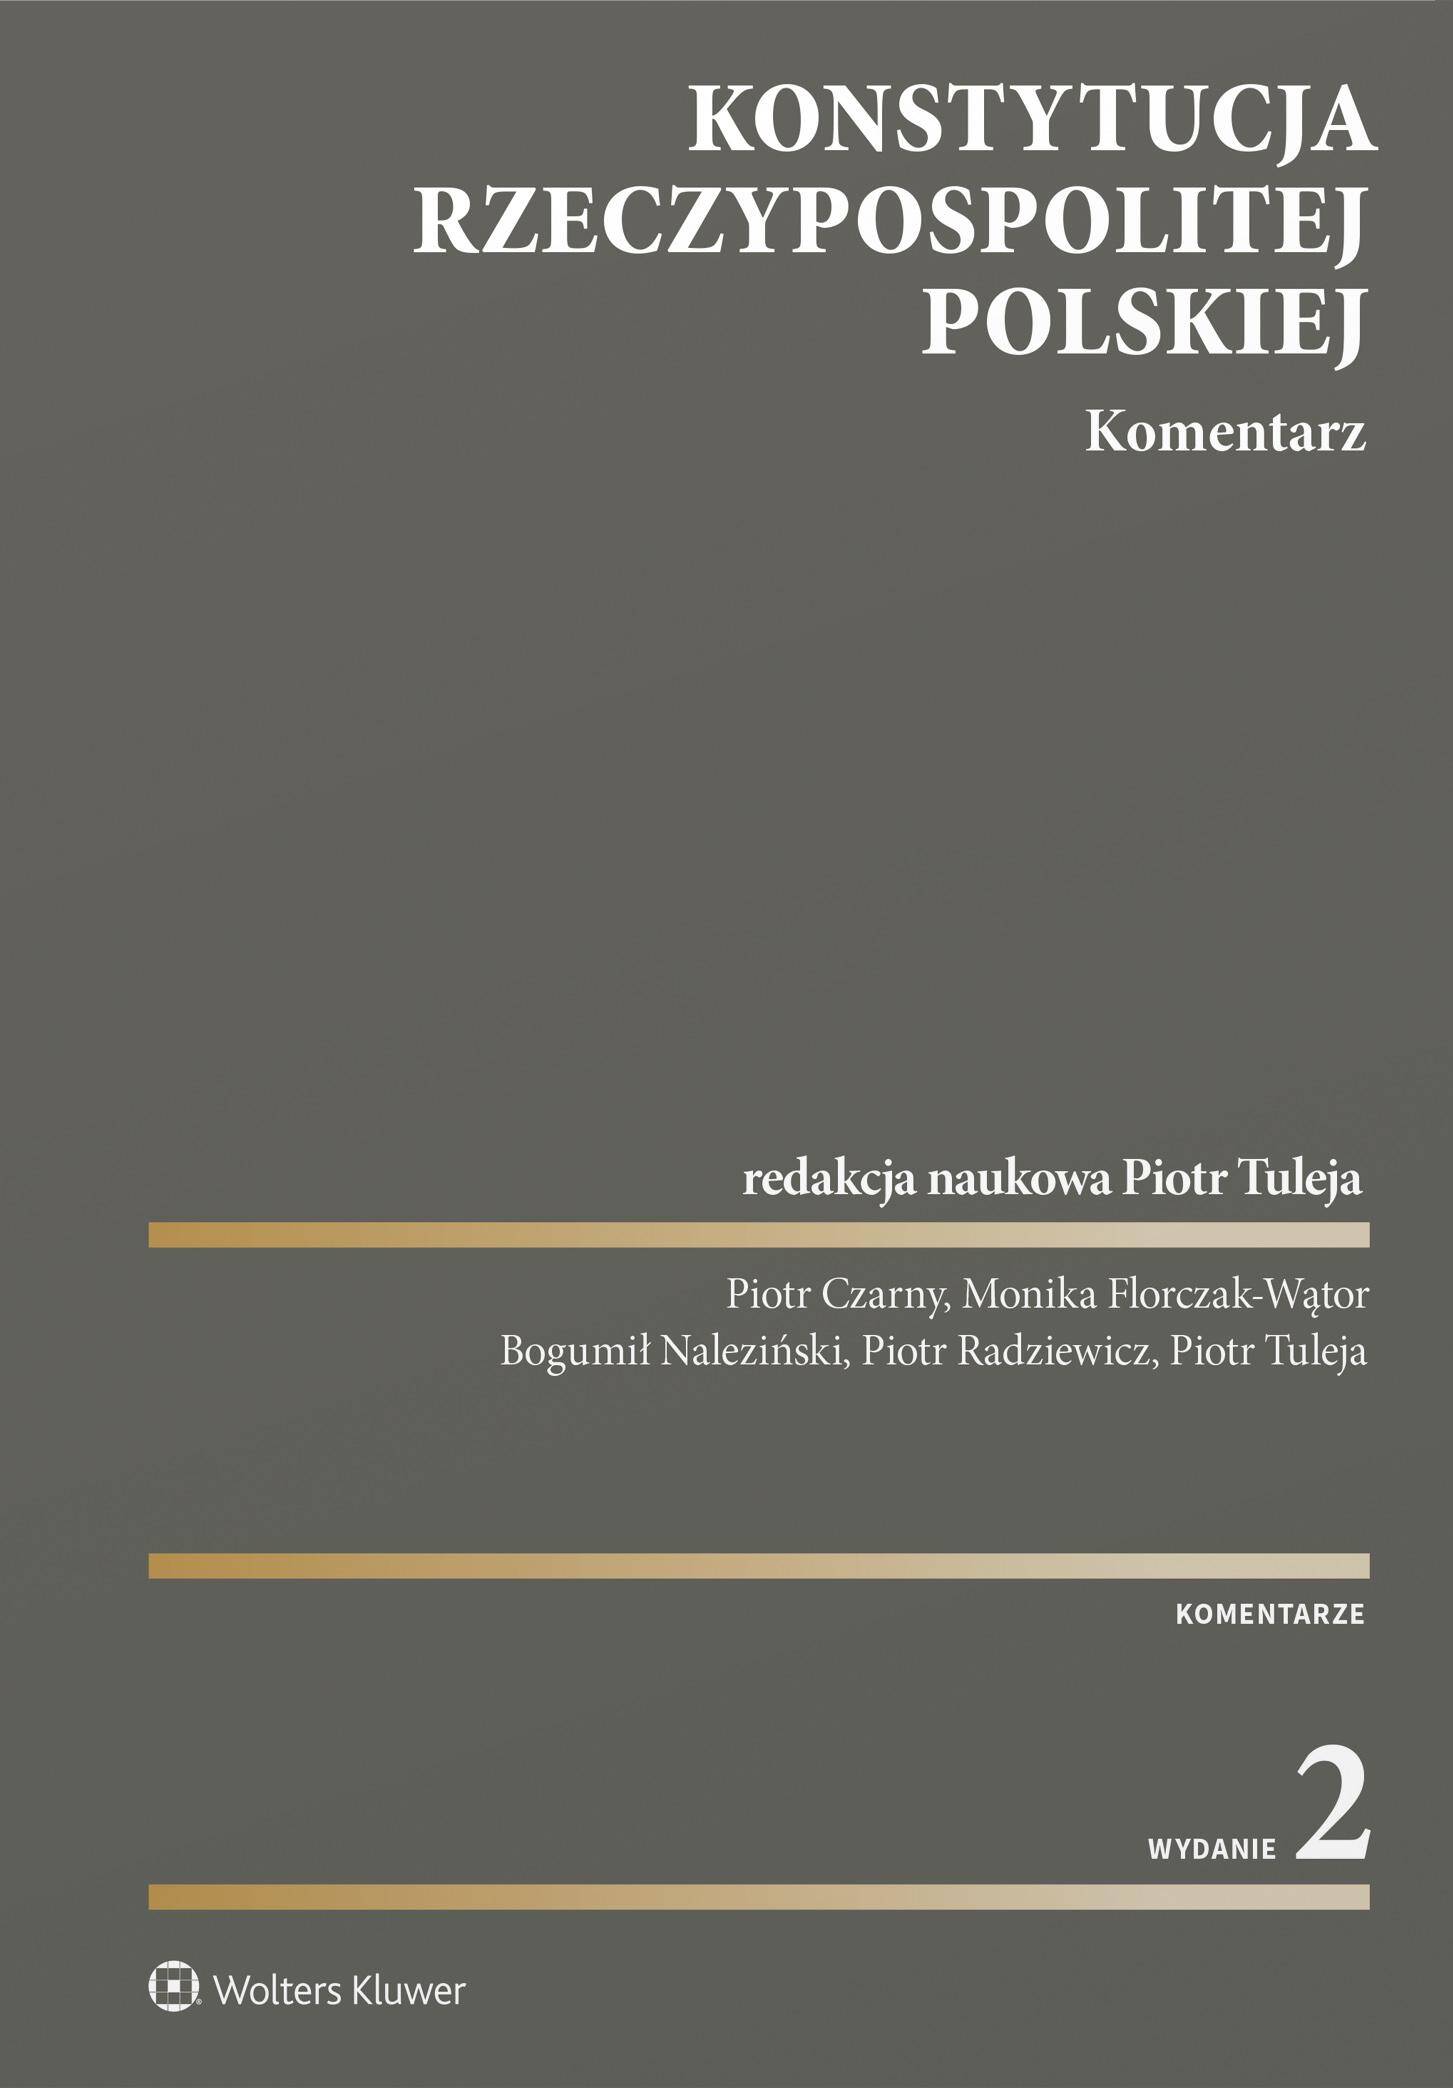 Konstytucja Rzeczypospolitej Polskiej. Komentarz wyd. 2023